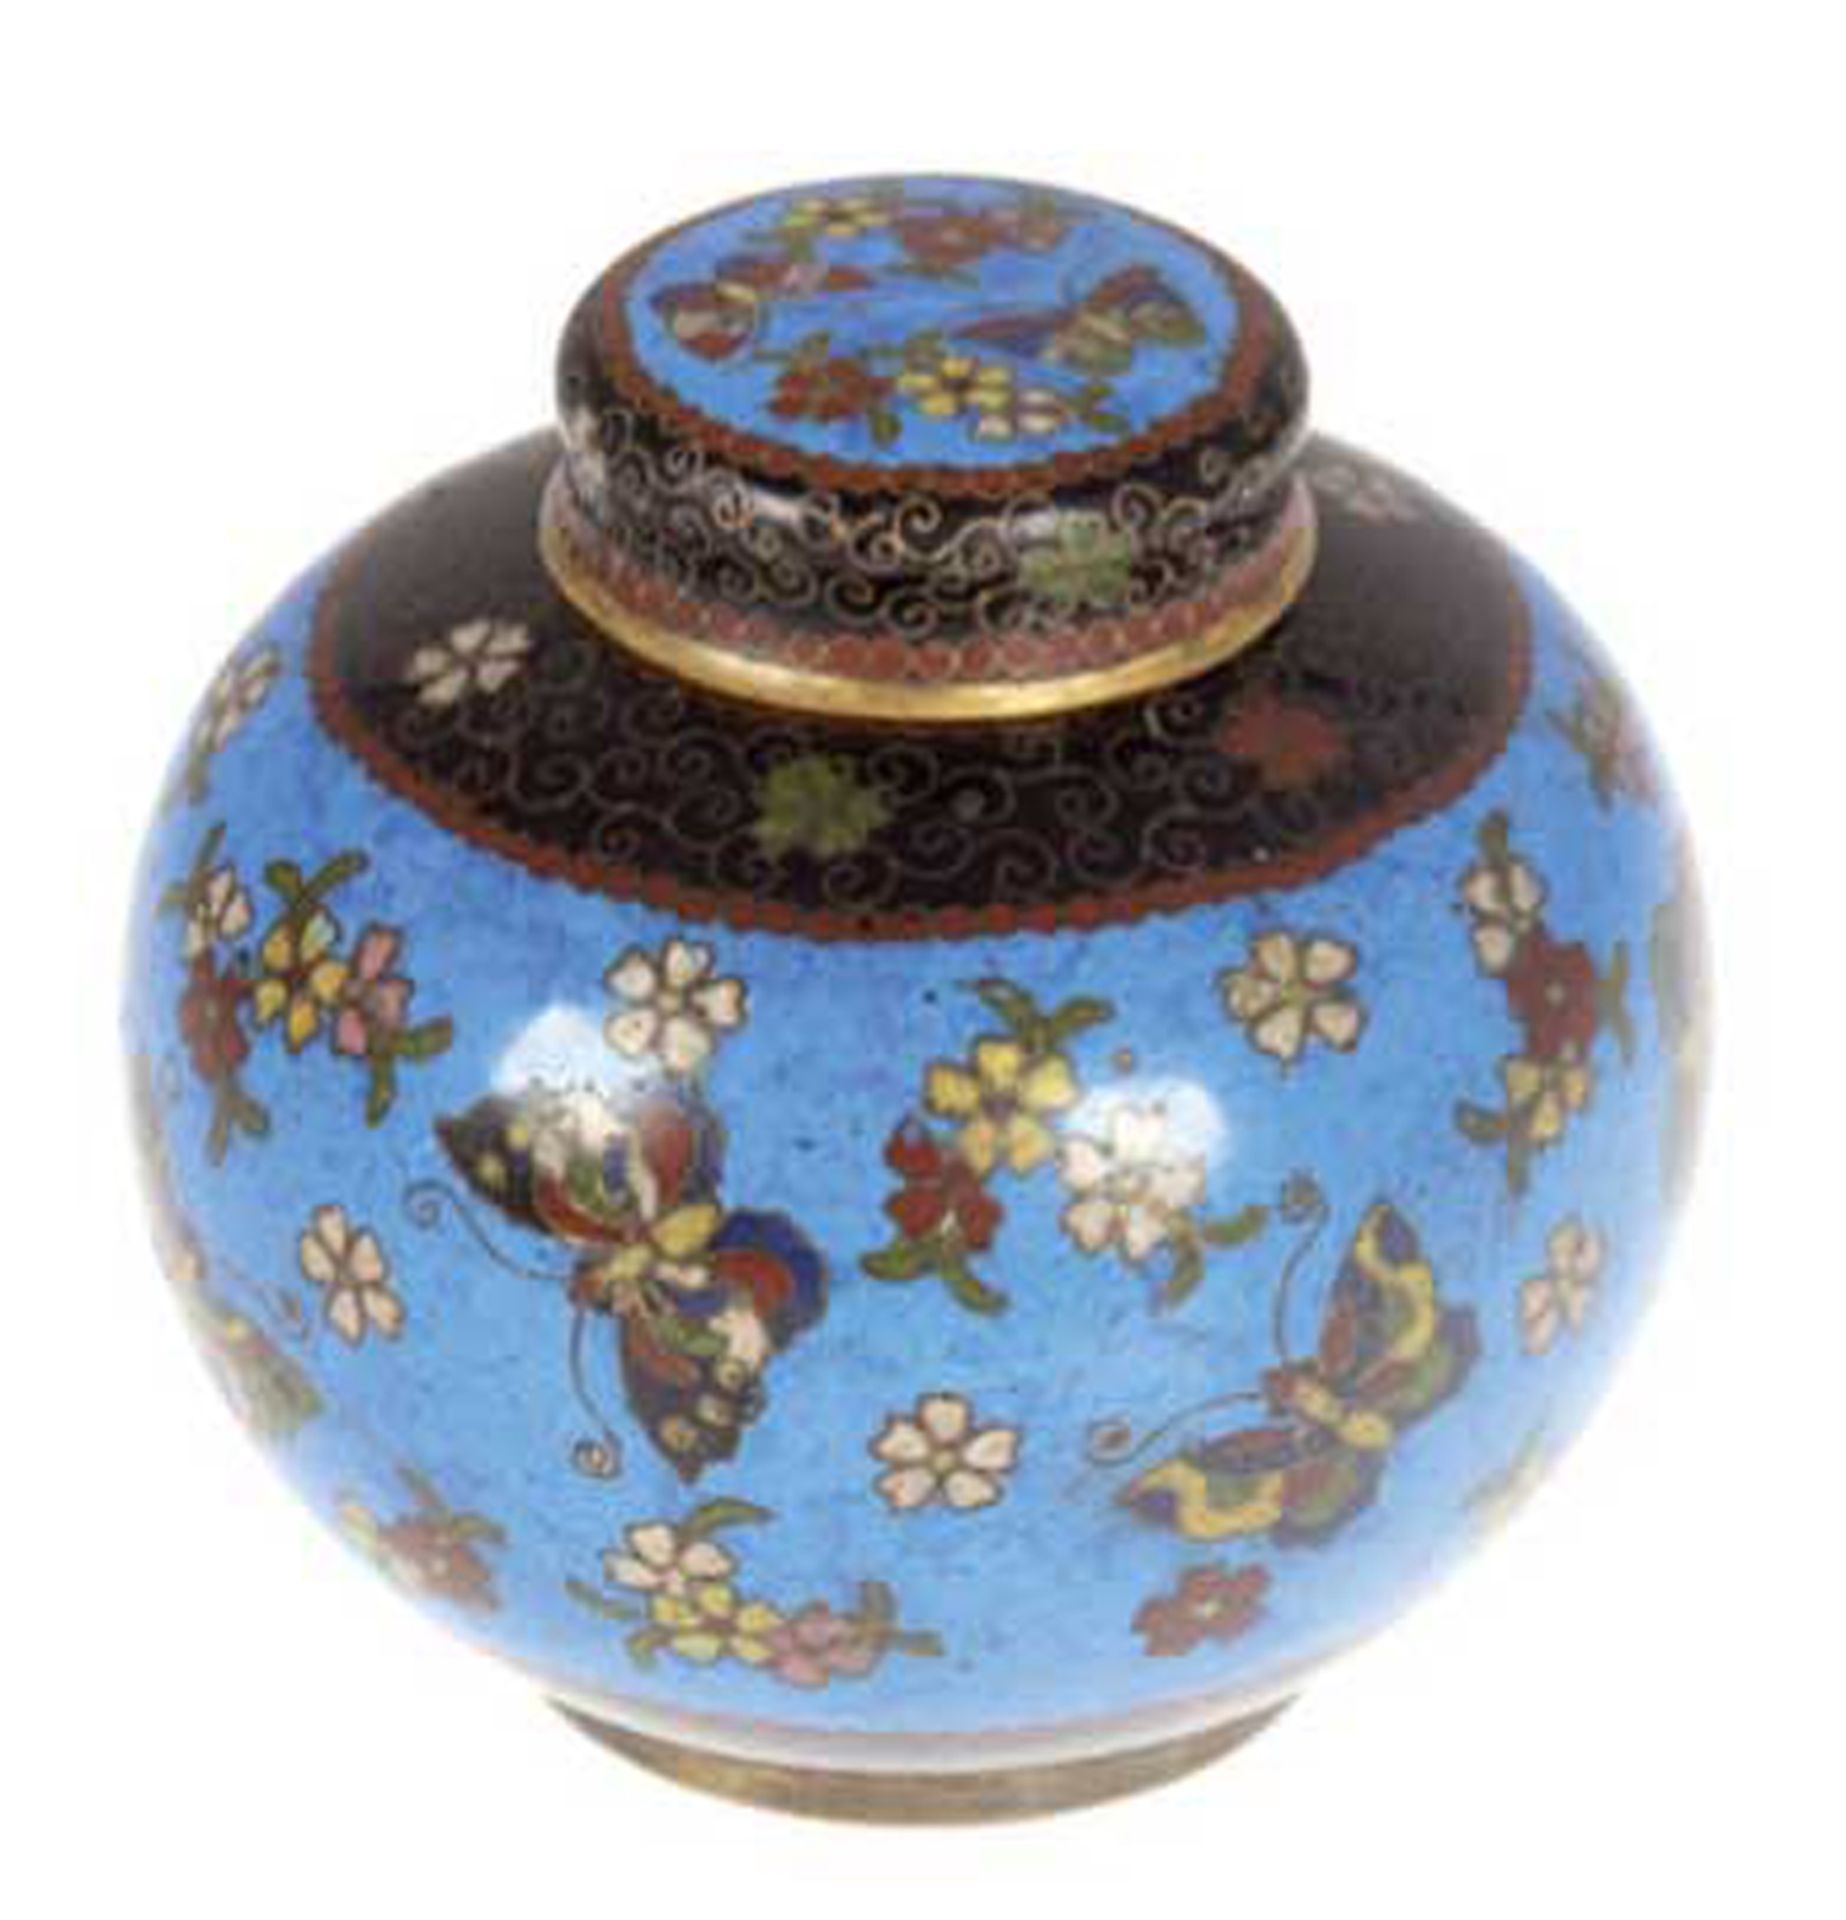 Cloisonné-Teedose, China, Quing Dynastie, Cloisonné, Floral- und Schmetterlingsdekor auf blauem Gru